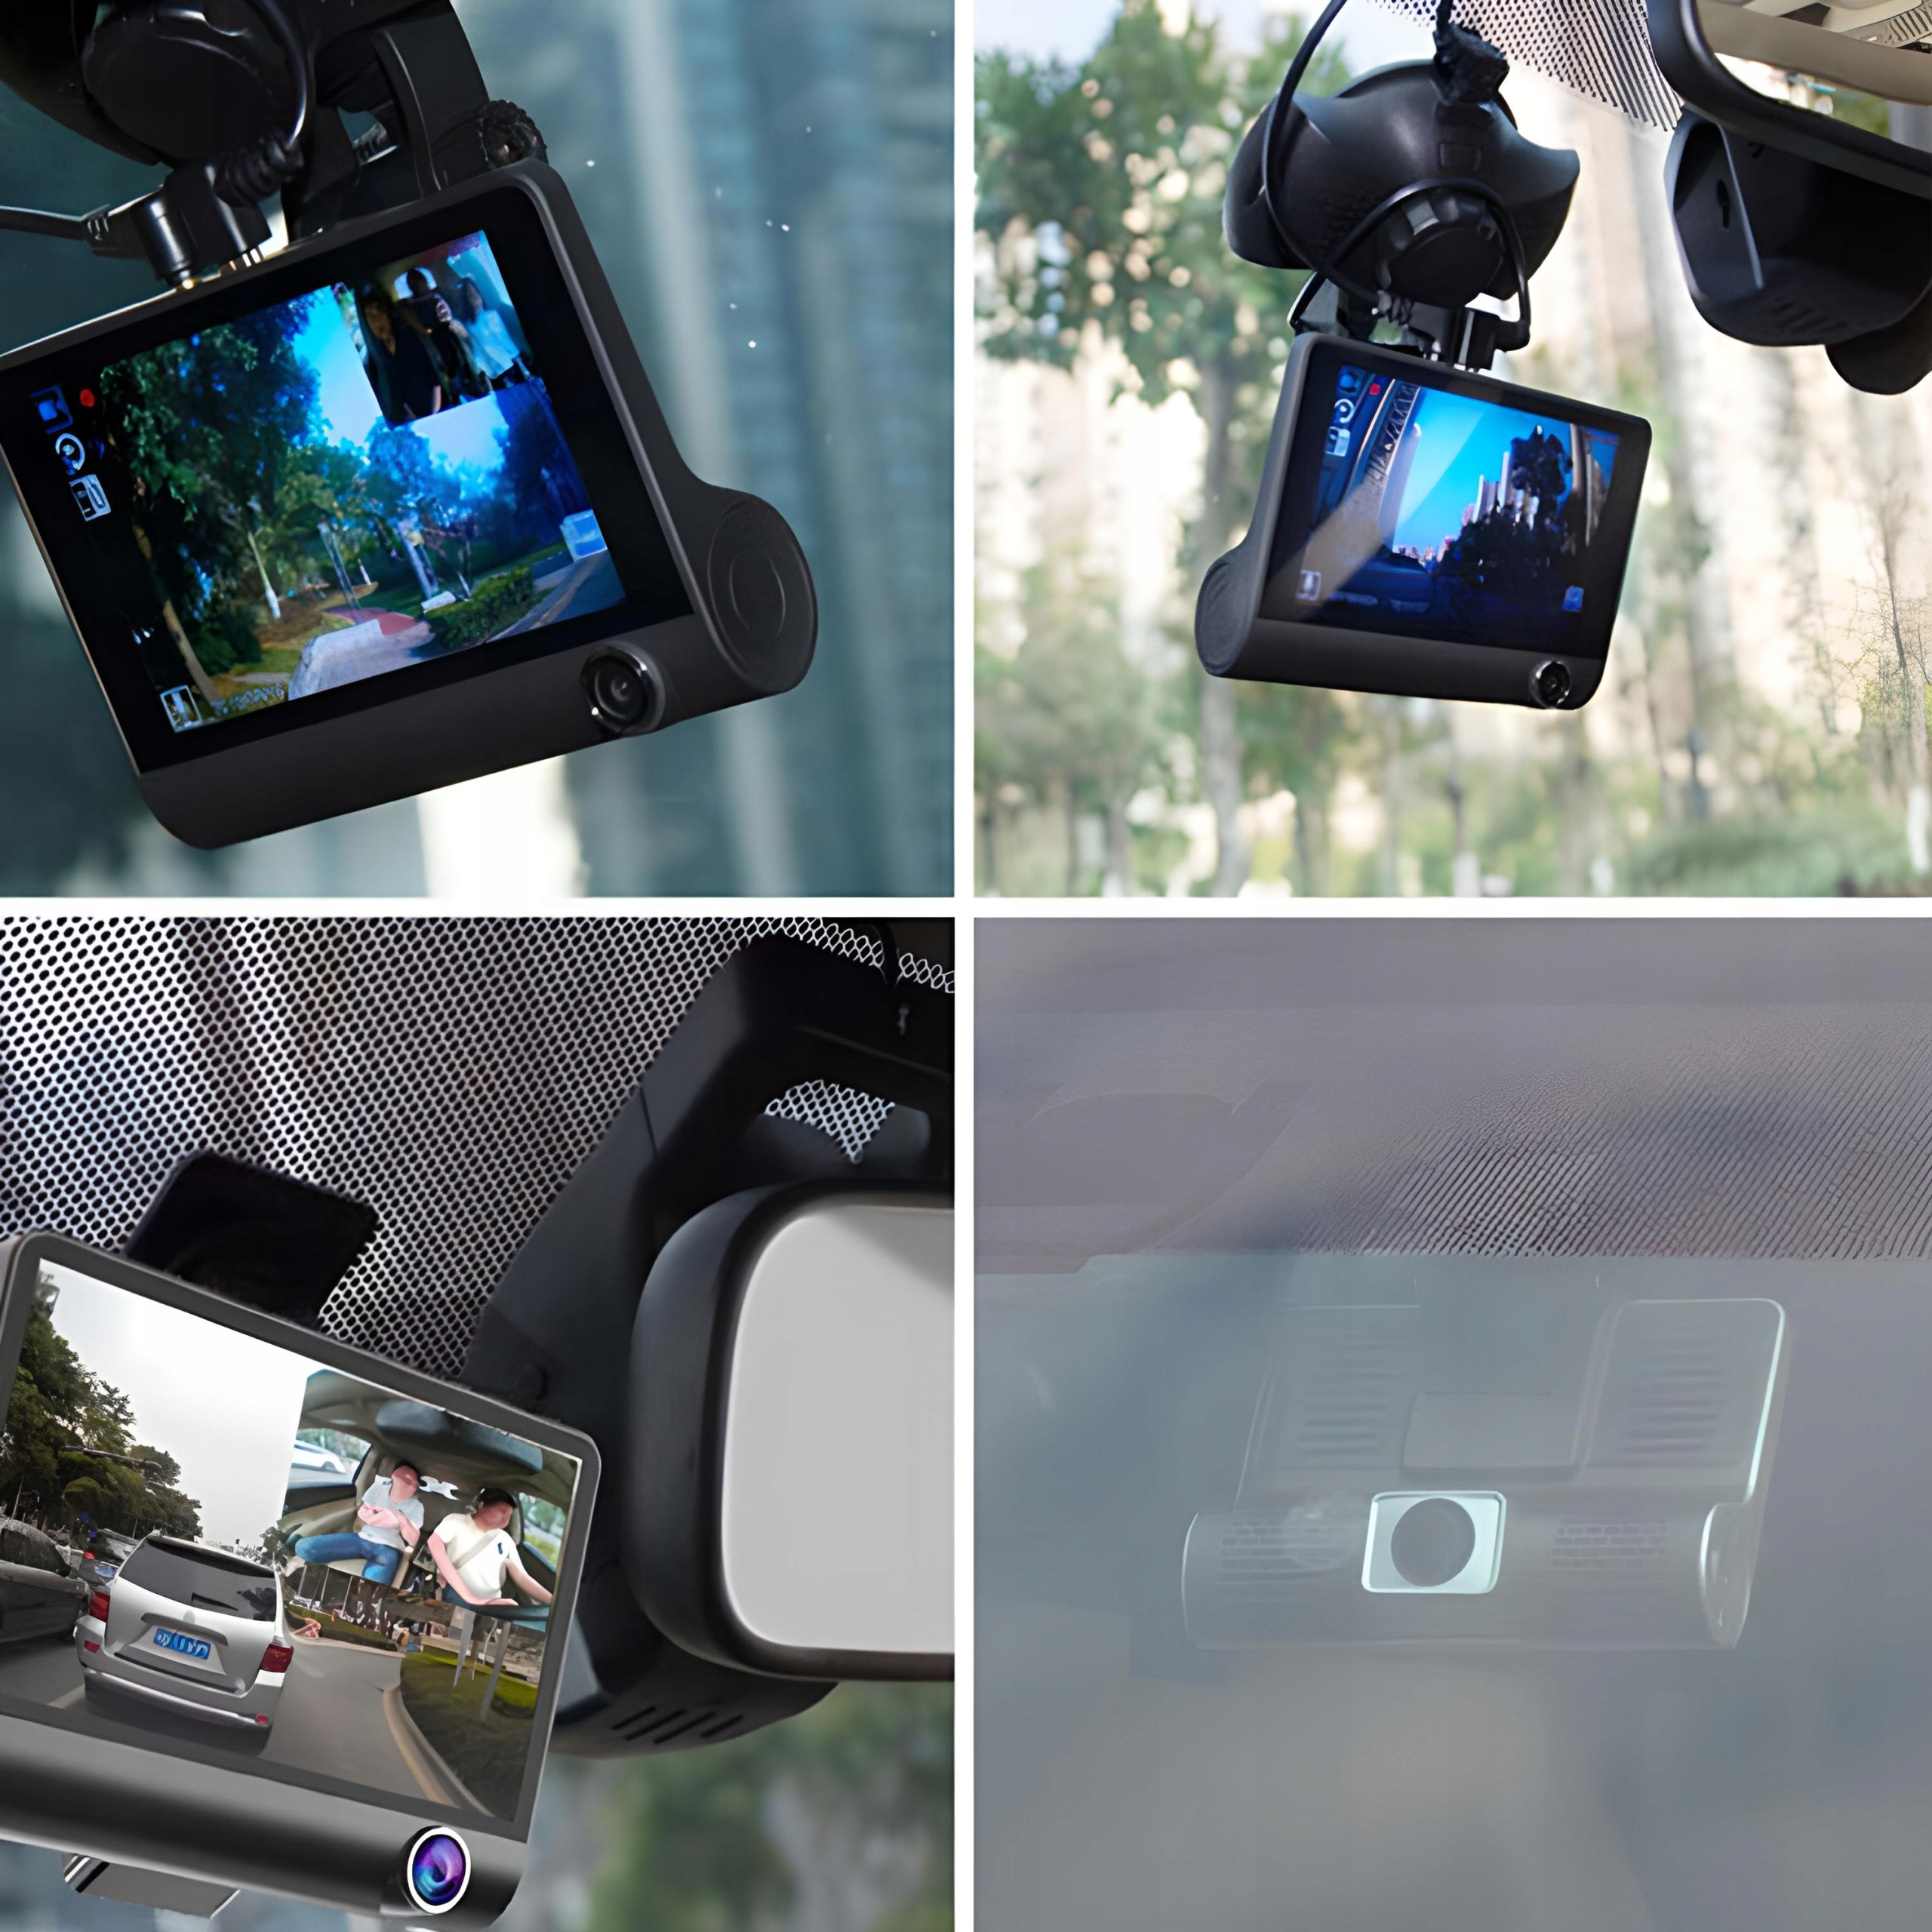 Drive регистратор. Видеорегистратор cam Dual Camera Dash DVR car 1080p. Видеорегистратор XPX p9, 3 камеры.